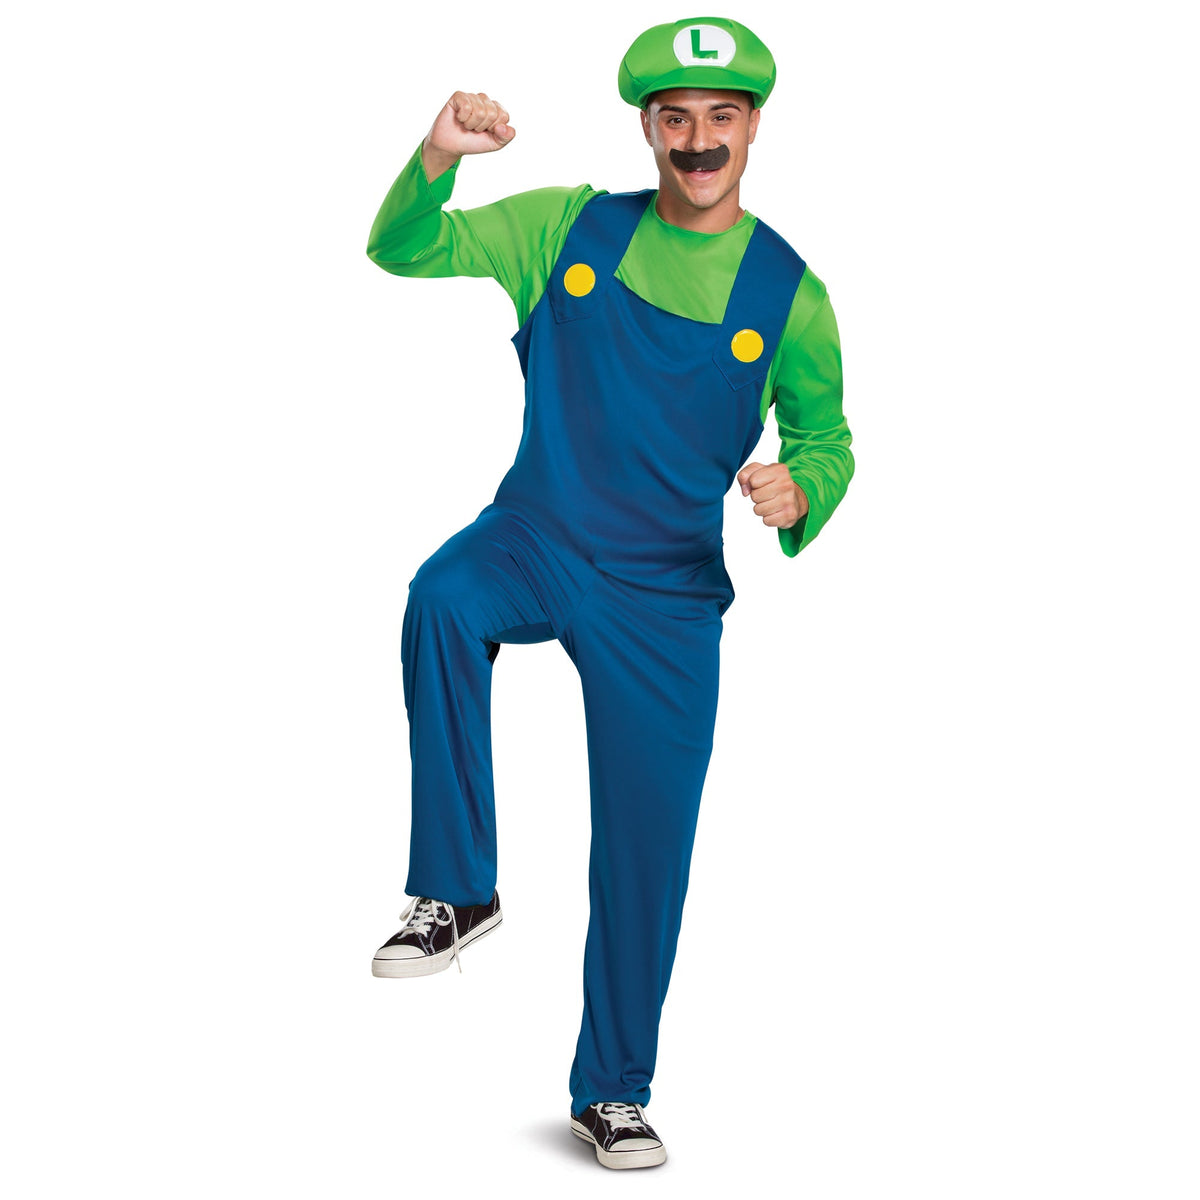 TOY-SPORT Costumes Luigi Classic Costume for Adults, Super Mario Bros.